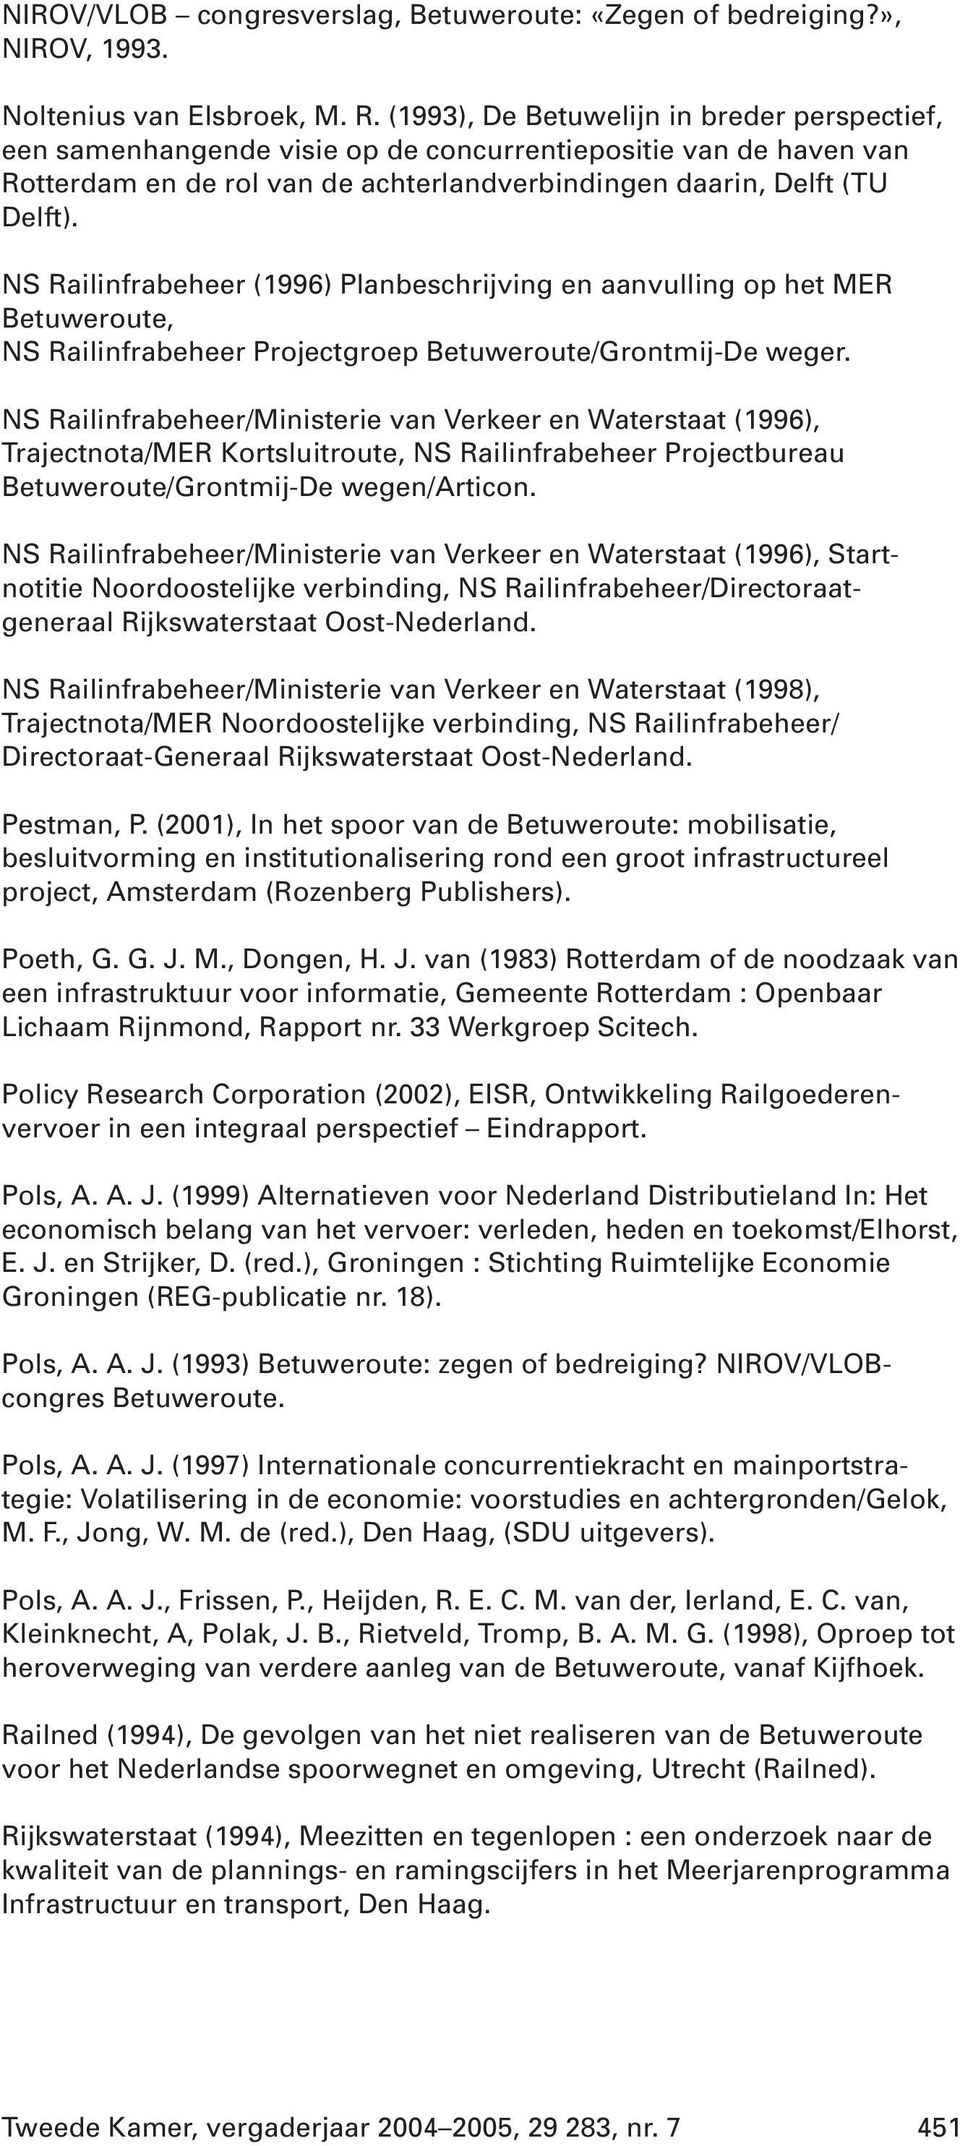 NS Railinfrabeheer (1996) Planbeschrijving en aanvulling op het MER Betuweroute, NS Railinfrabeheer Projectgroep Betuweroute/Grontmij-De weger.